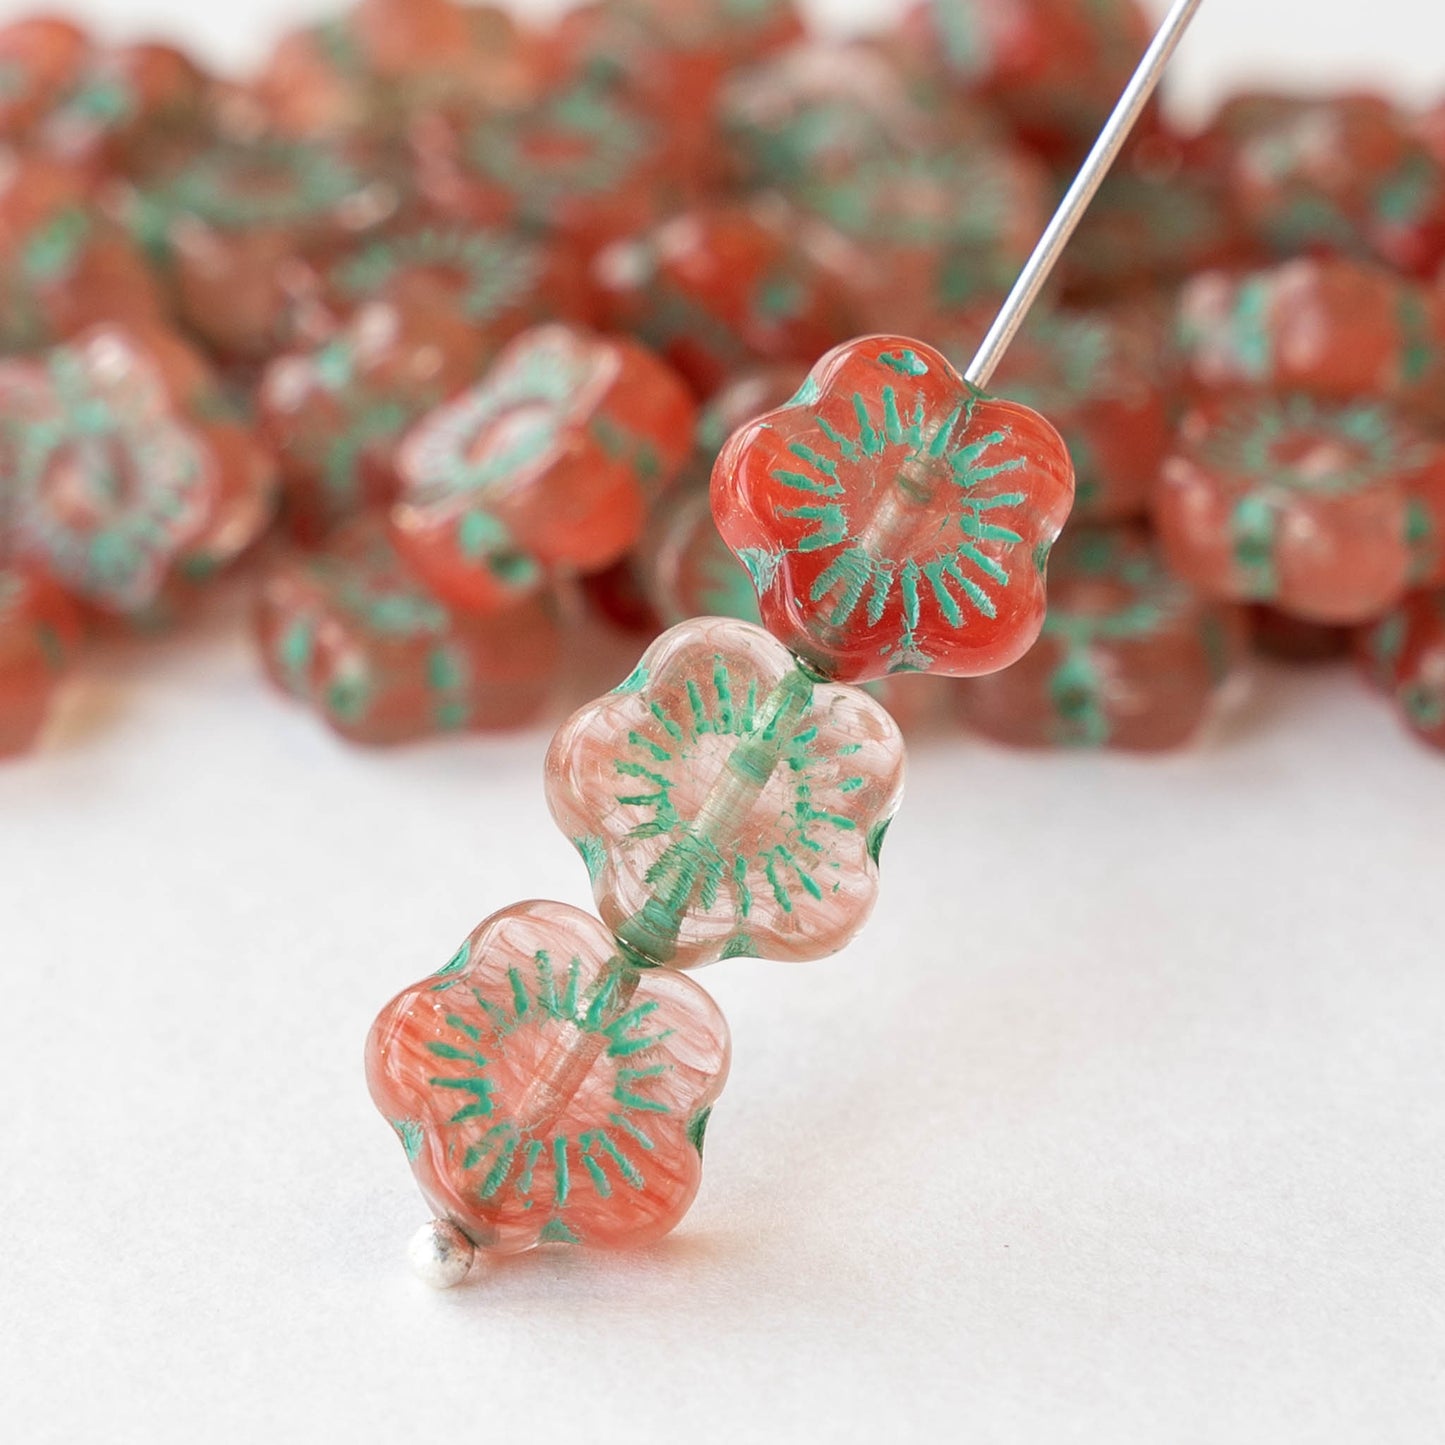 10mm Glass Flower Beads - Watermelon - 20 beads